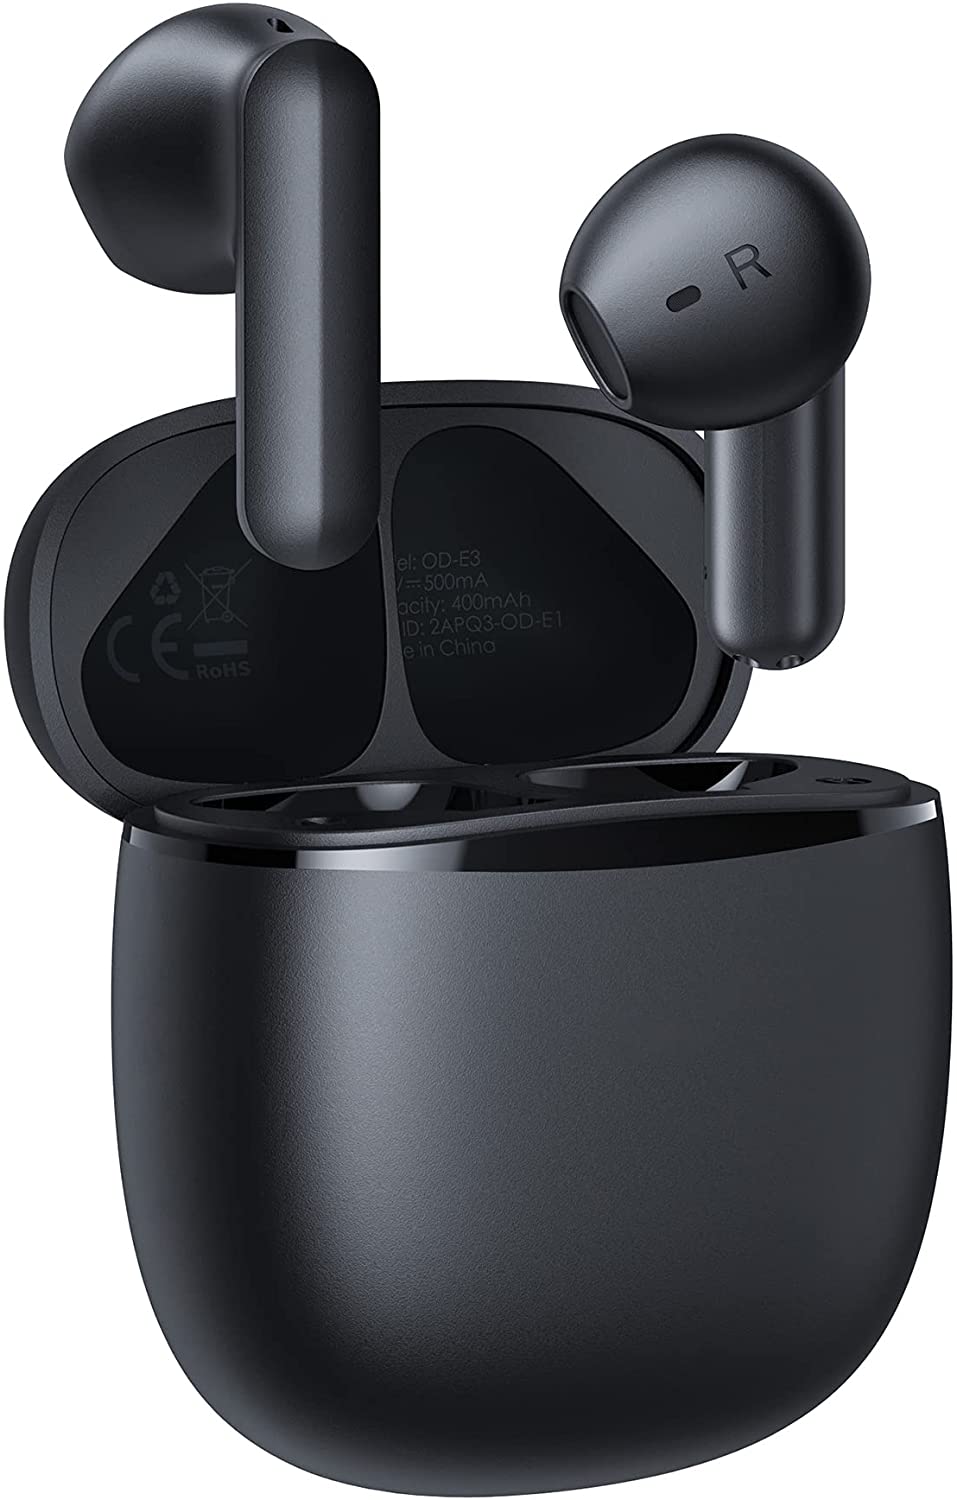 Bild zu Aukey In-Ear Bluetooth Kopfhörer mit USB-C Schnellladegehäuse für 11,99€